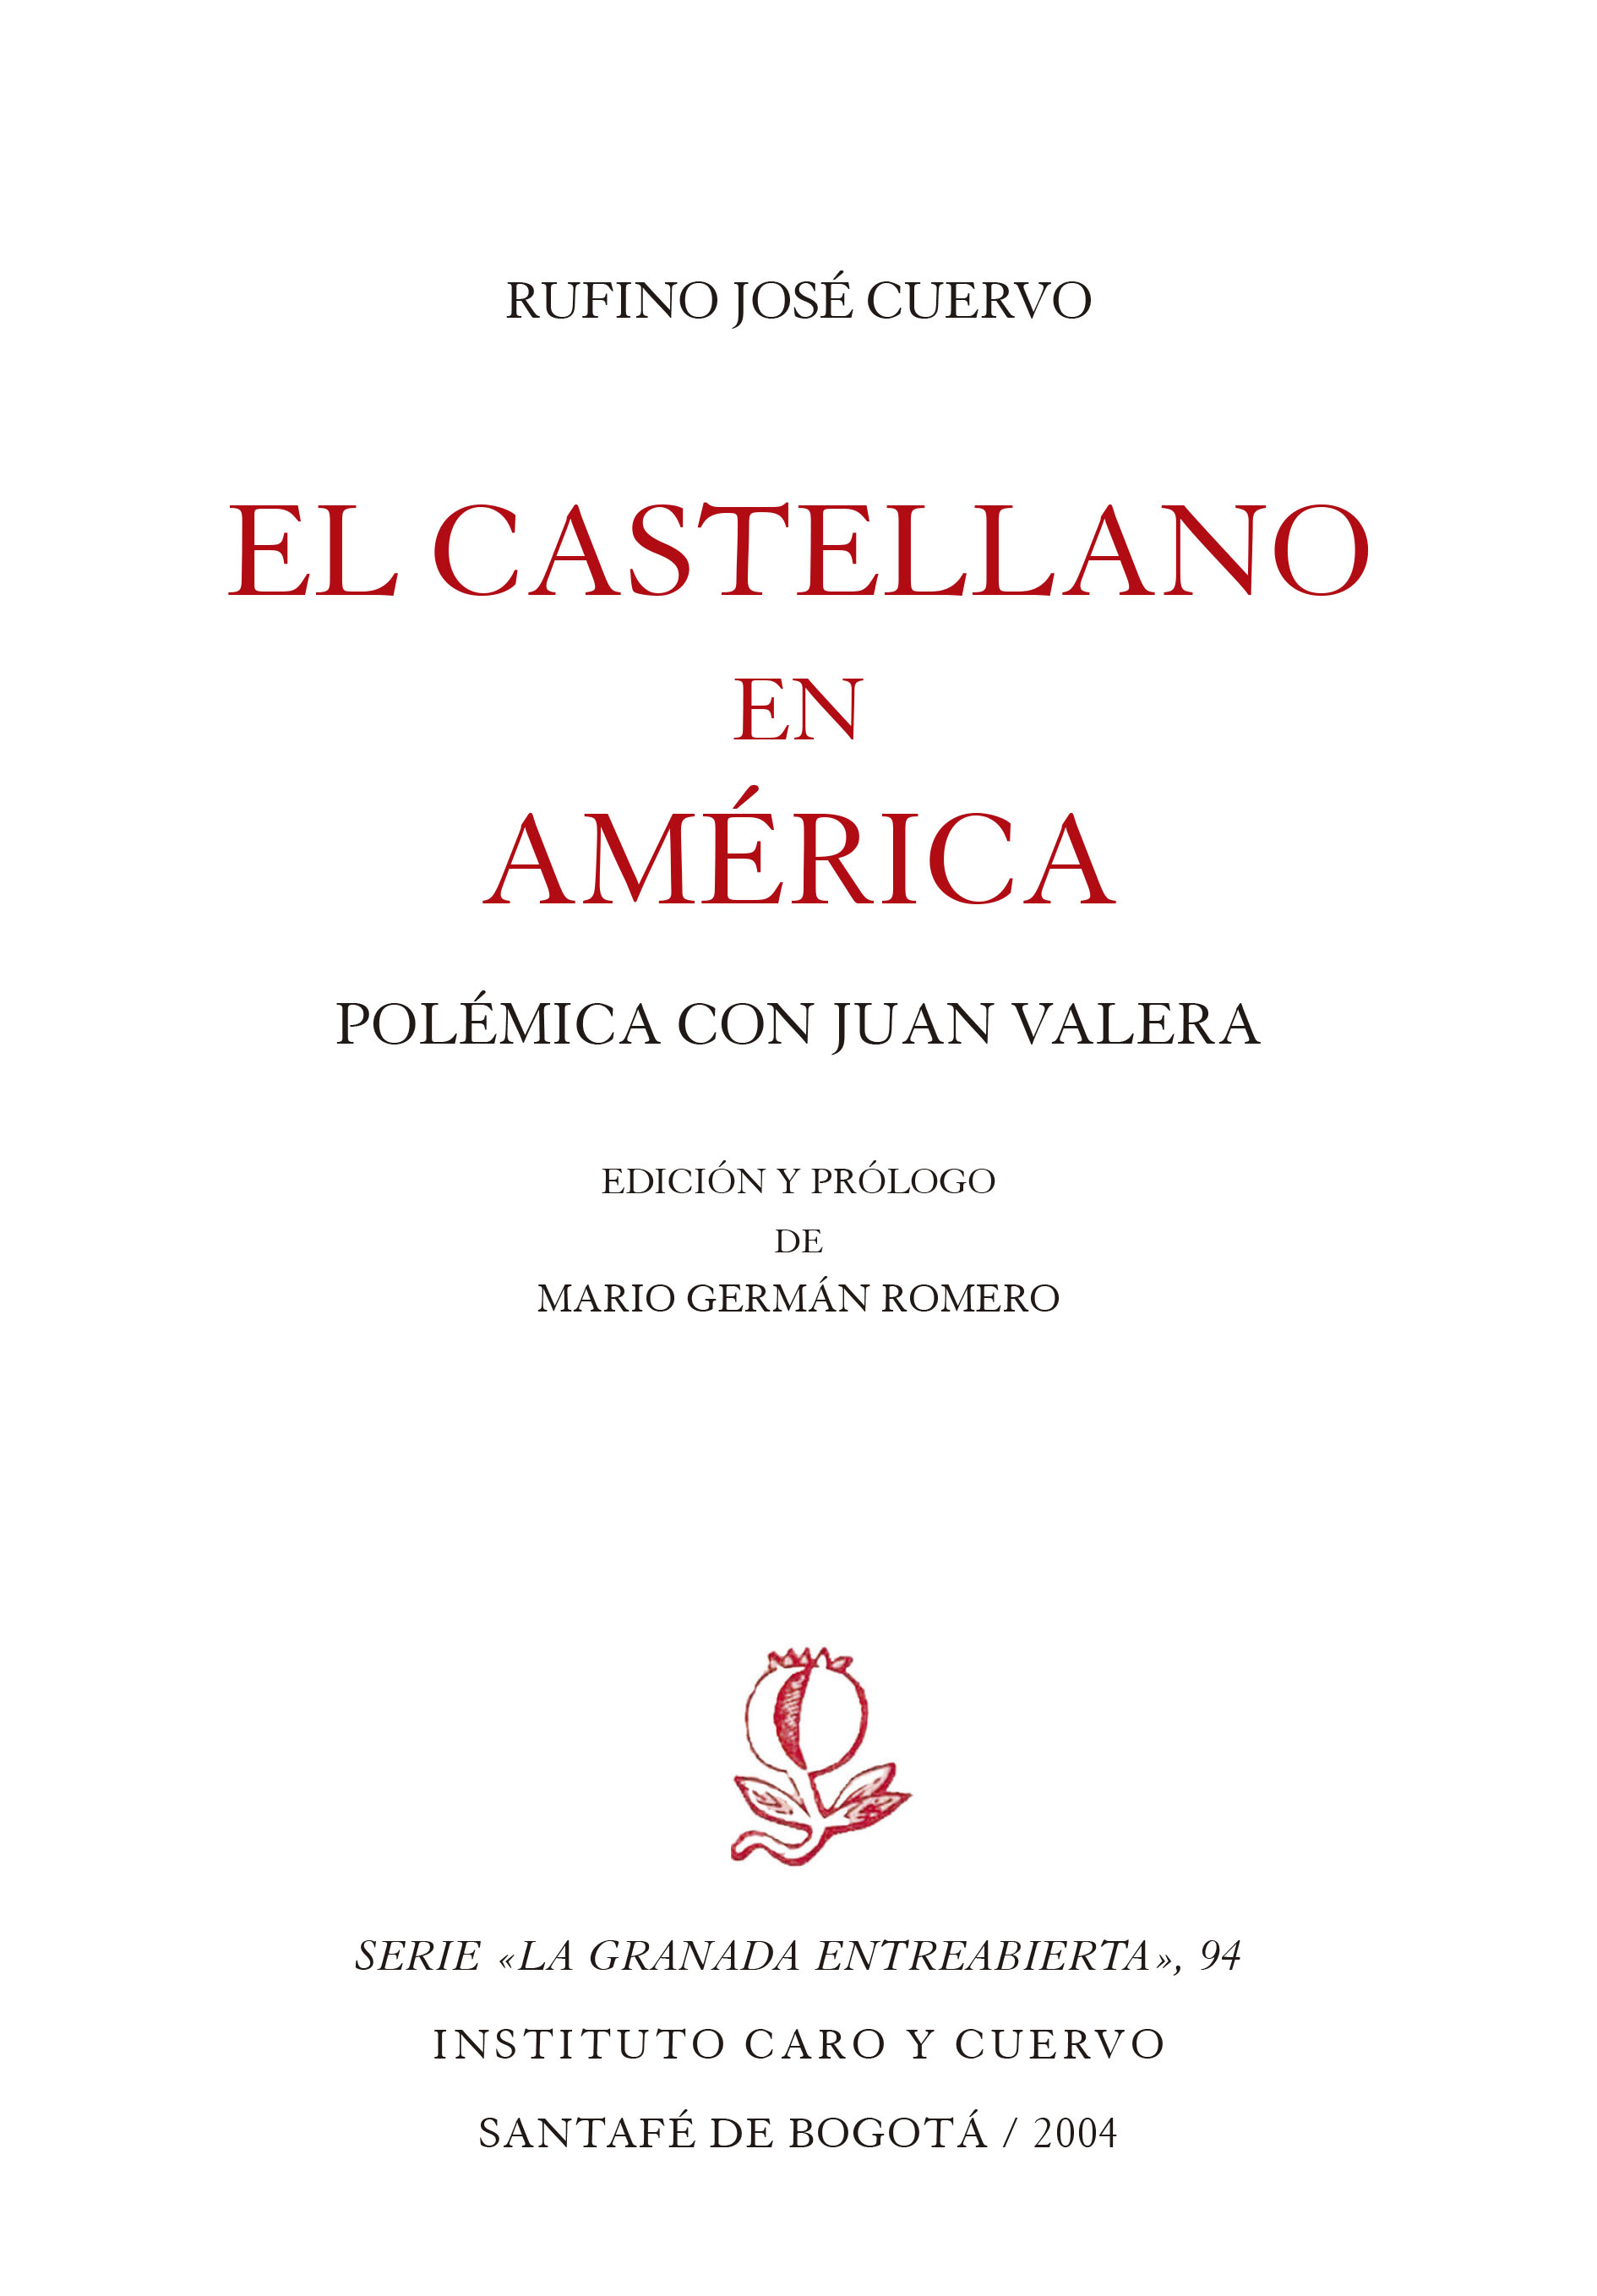 El castellano en América. Polémica con Juan Valera